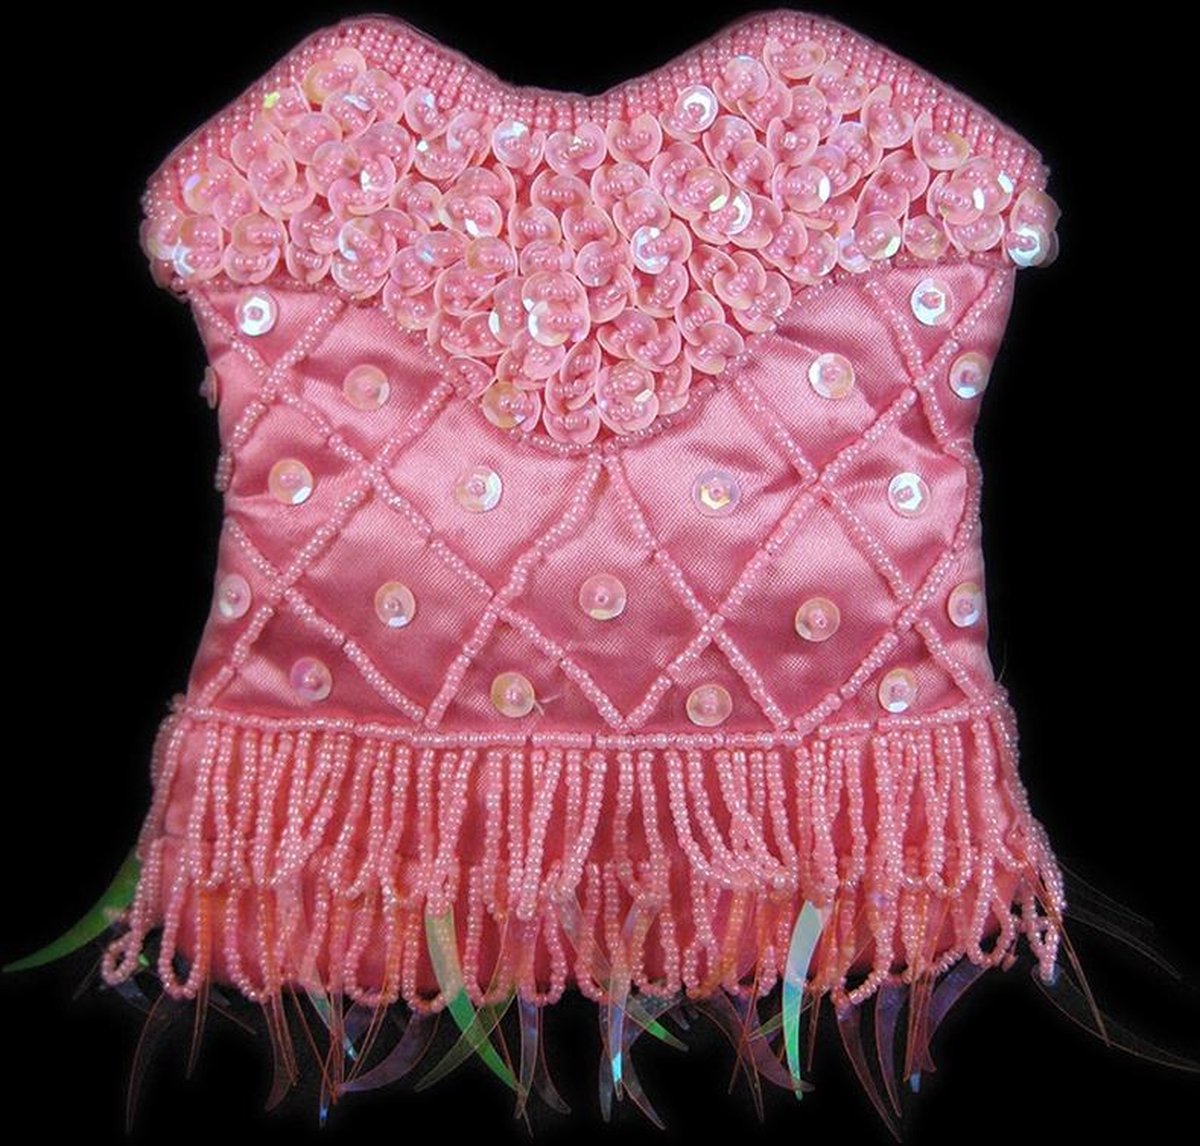 Roze Schouder Tasje Pailletten, Roze Tas, String van Kraaltjes 140 cm, Chique Tasje, Handgemaakt Indonesië 15 x 13 cm